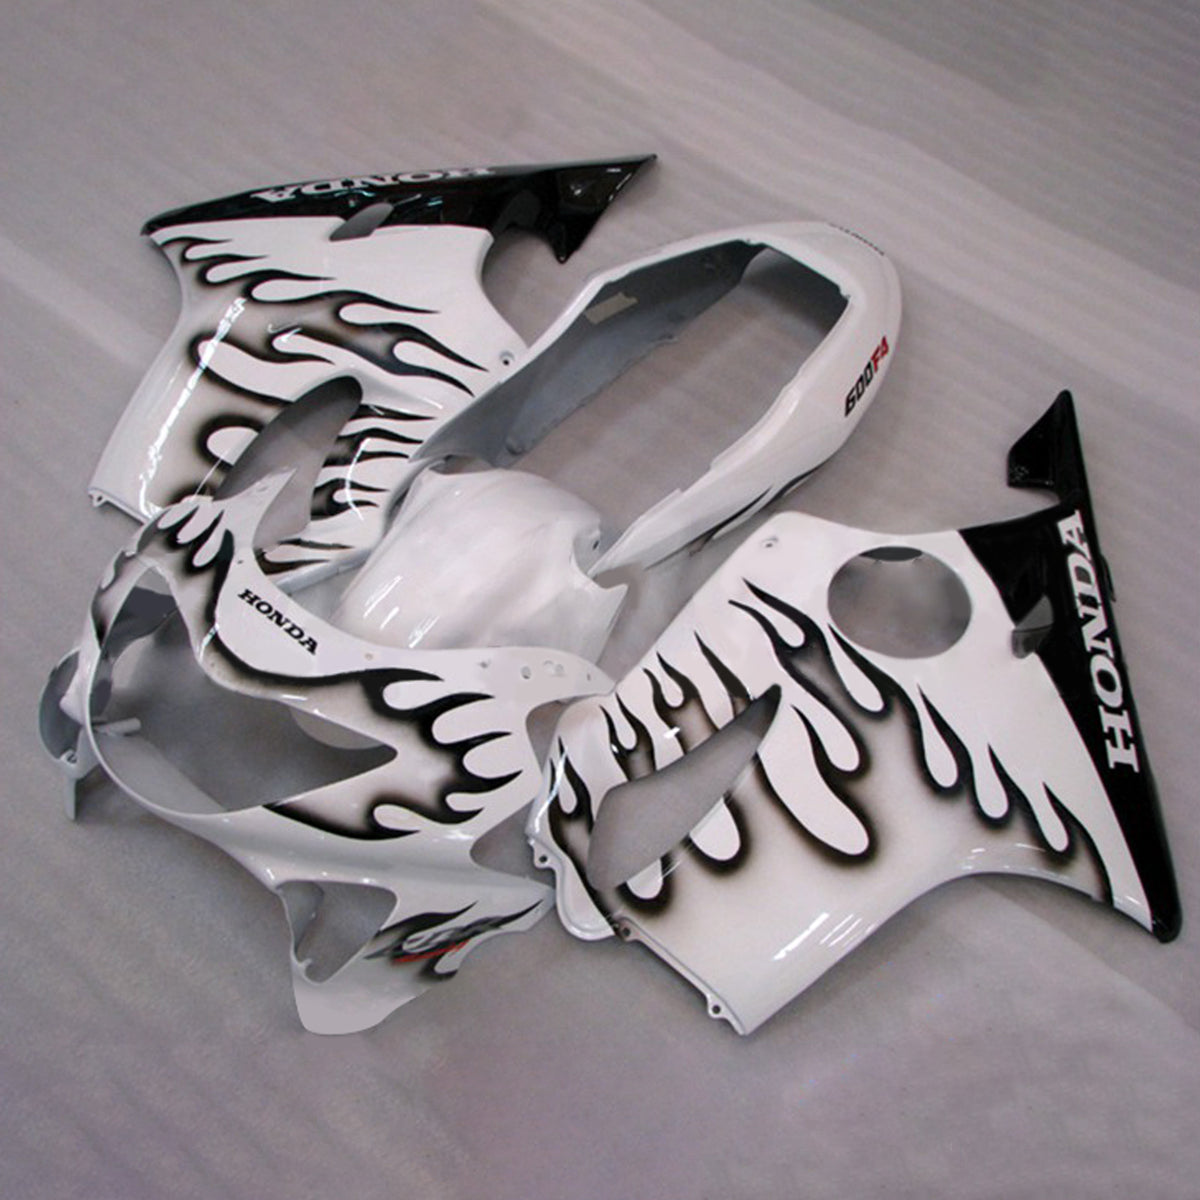 Amotopart 1999-2000 CBR600 F4 Honda bianco con kit carenatura fiamma nera